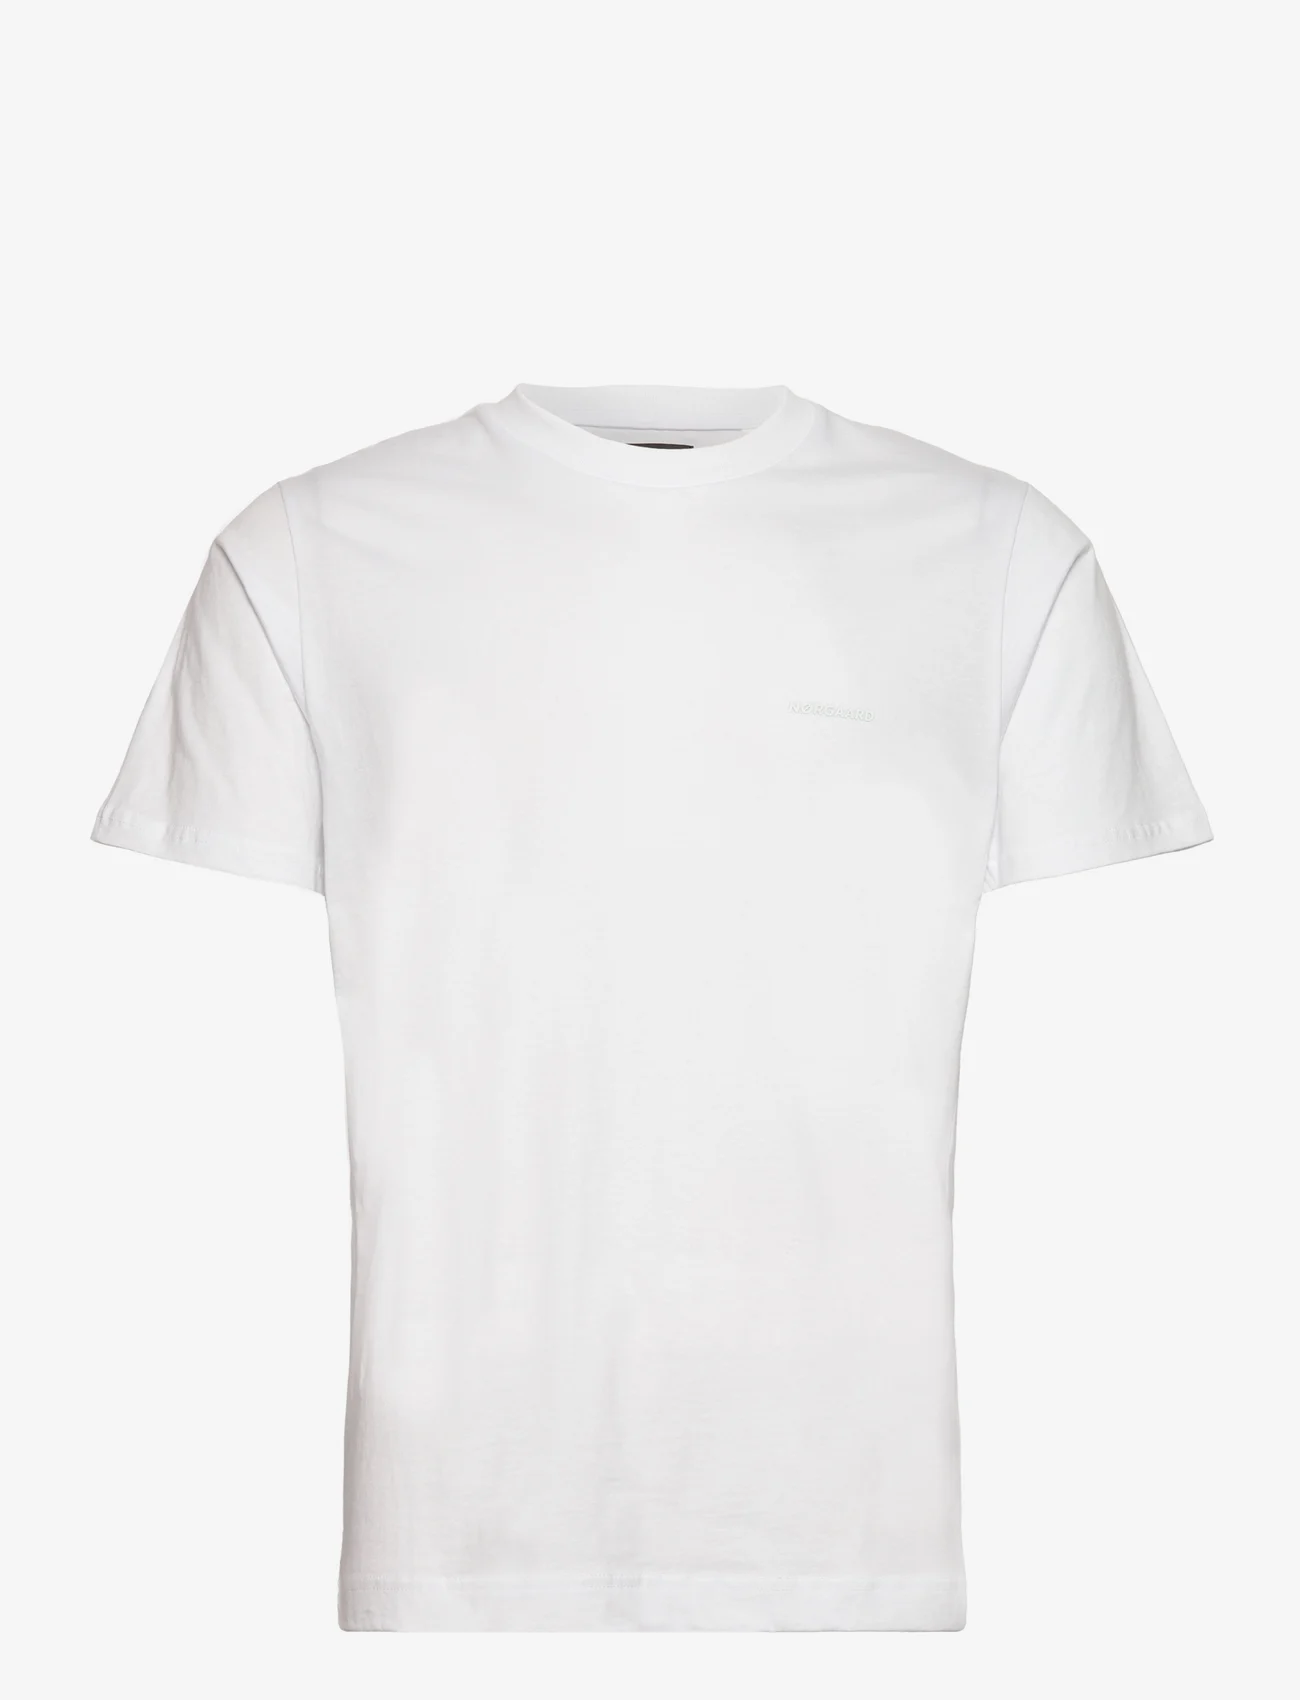 Mads Nørgaard - Organic Twin Akio Tee - laisvalaikio marškinėliai - white - 0